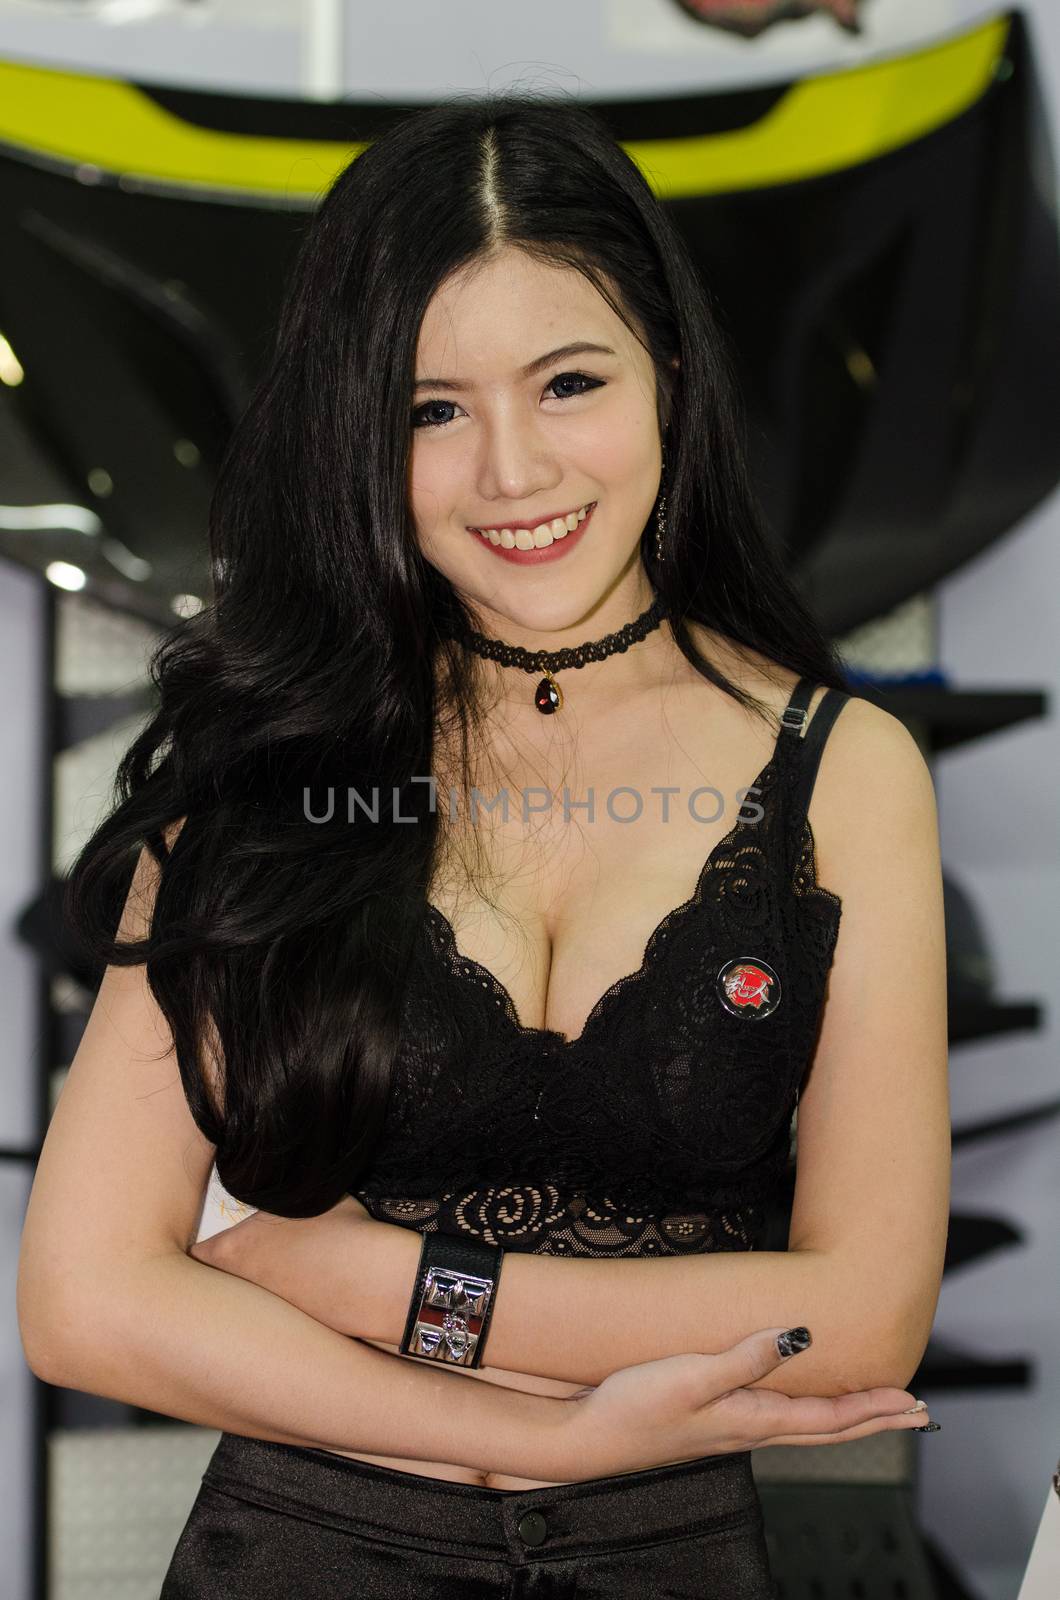 Bangkok International Auto Salon 2016 by chatchai